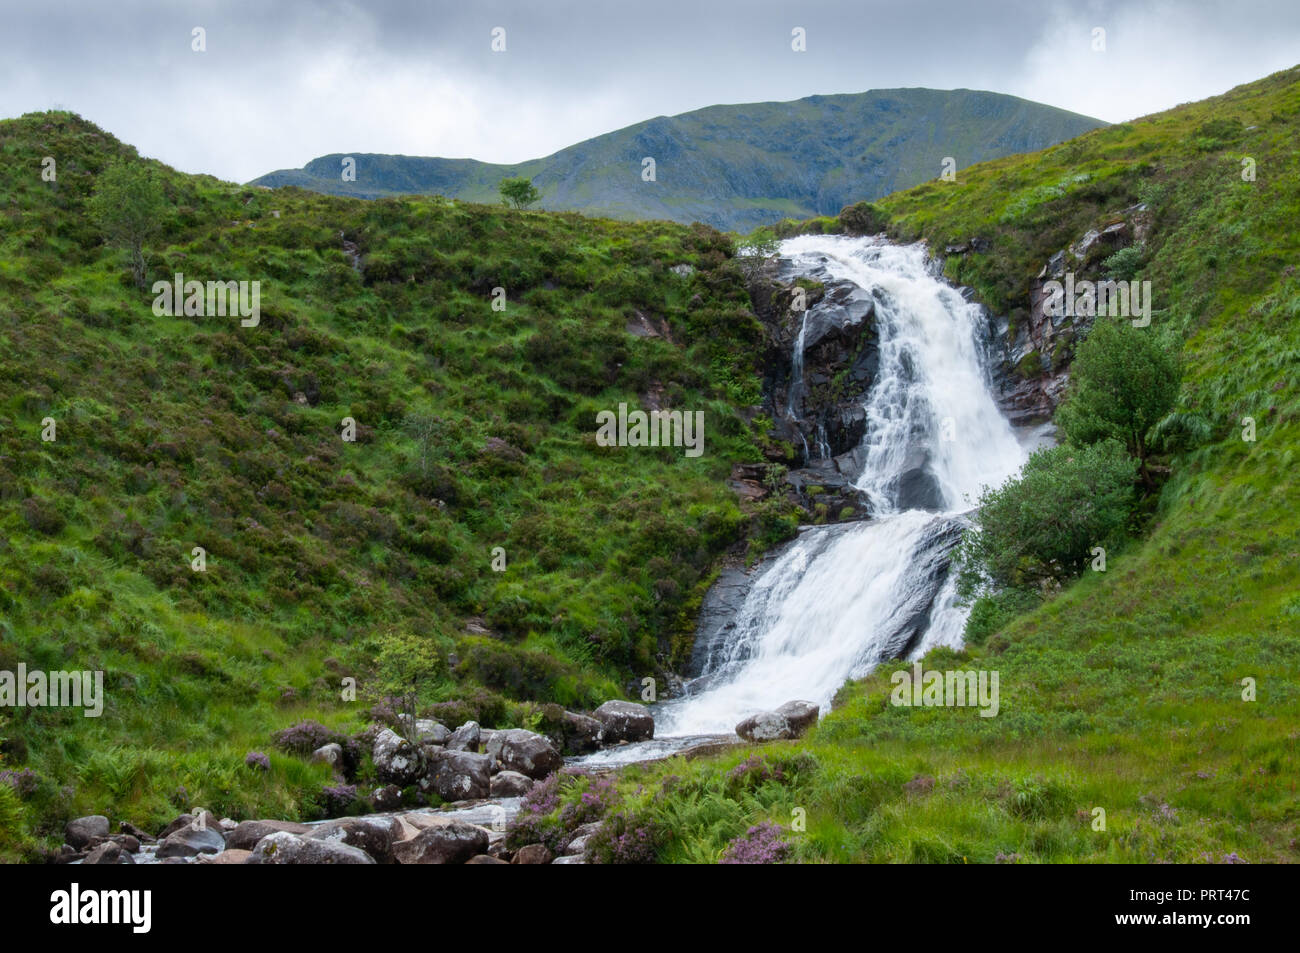 Massive, donnernden weiß schäumenden Wasserfall, stürzt über eine Lippe in das Tal unterhalb, in Schottland. Stockfoto